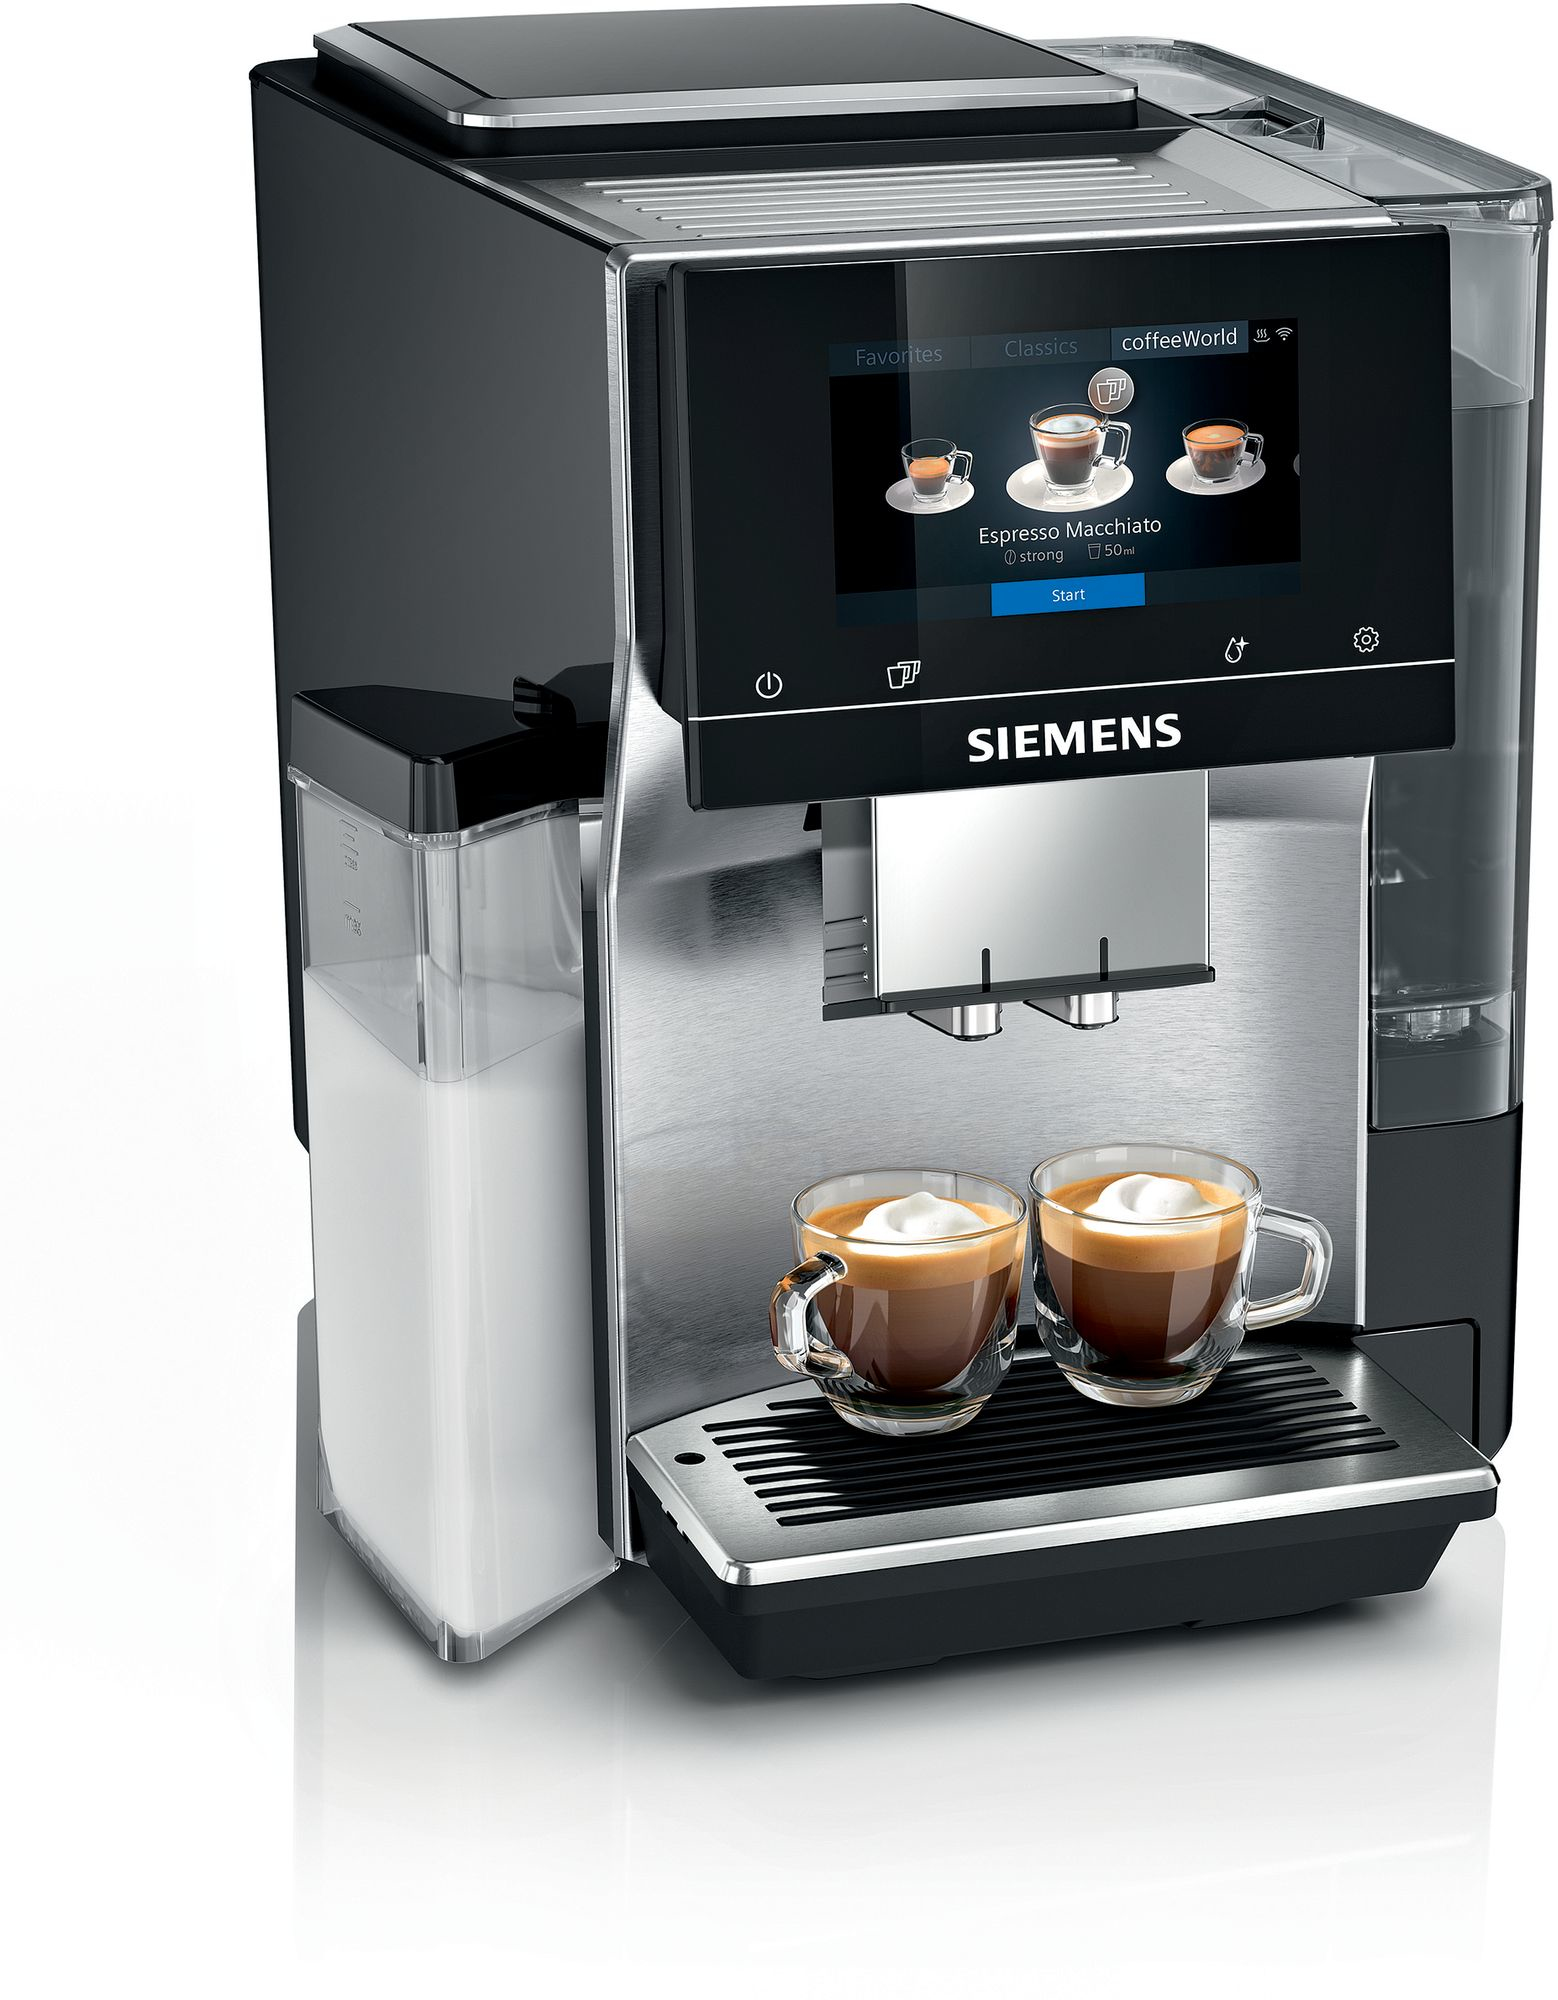 Siemens iQ700 TQ707R03 coffee maker